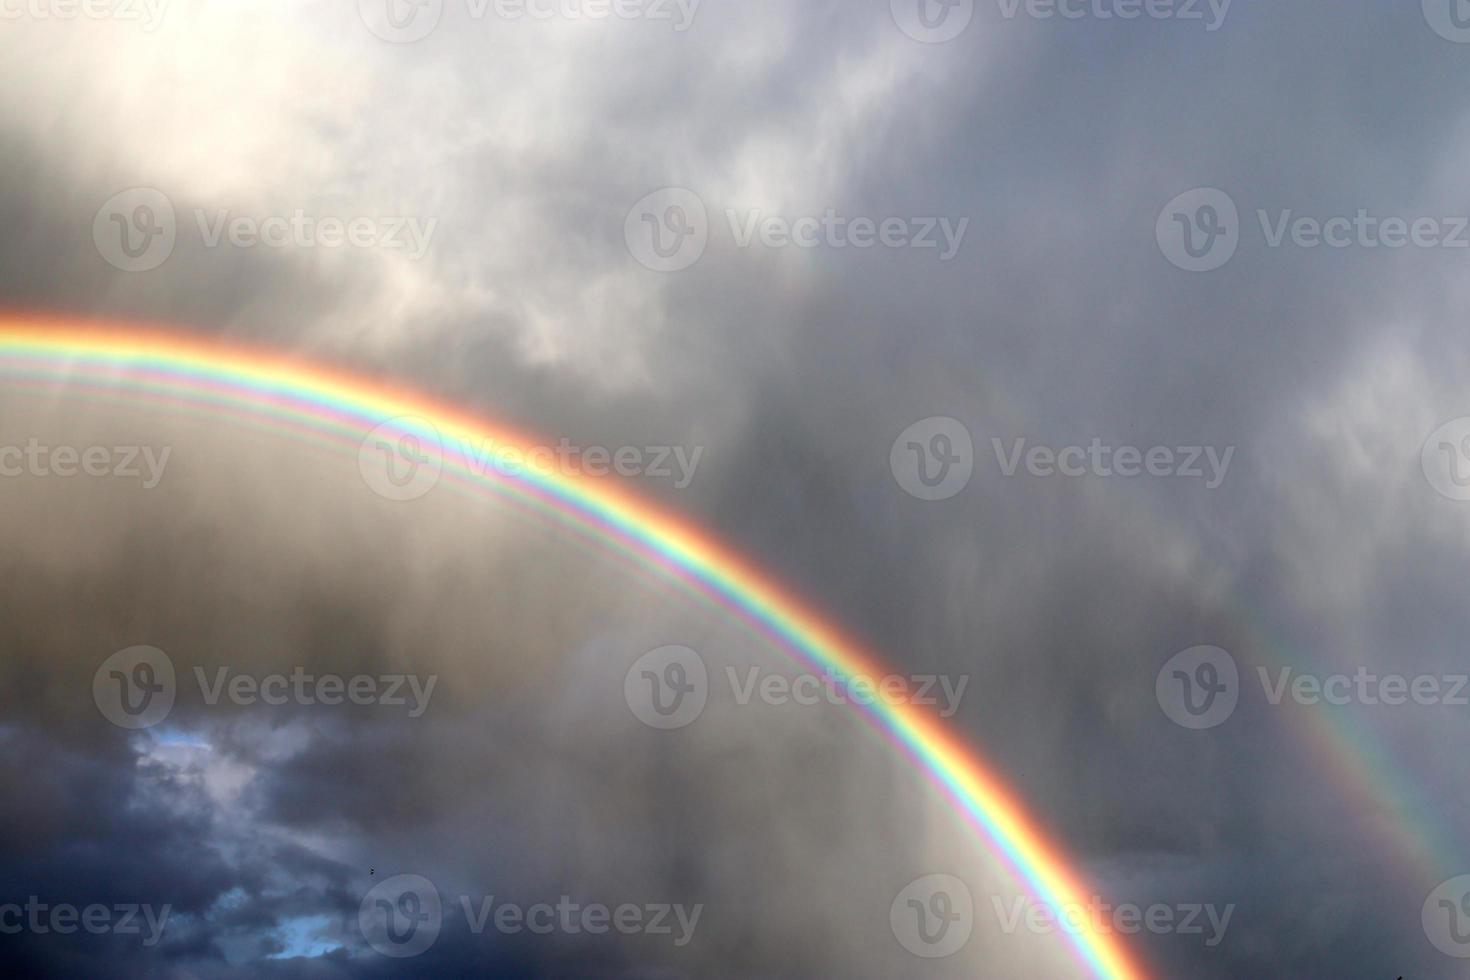 impresionantes arco iris dobles naturales más arcos supernumerarios vistos en un lago en el norte de Alemania foto